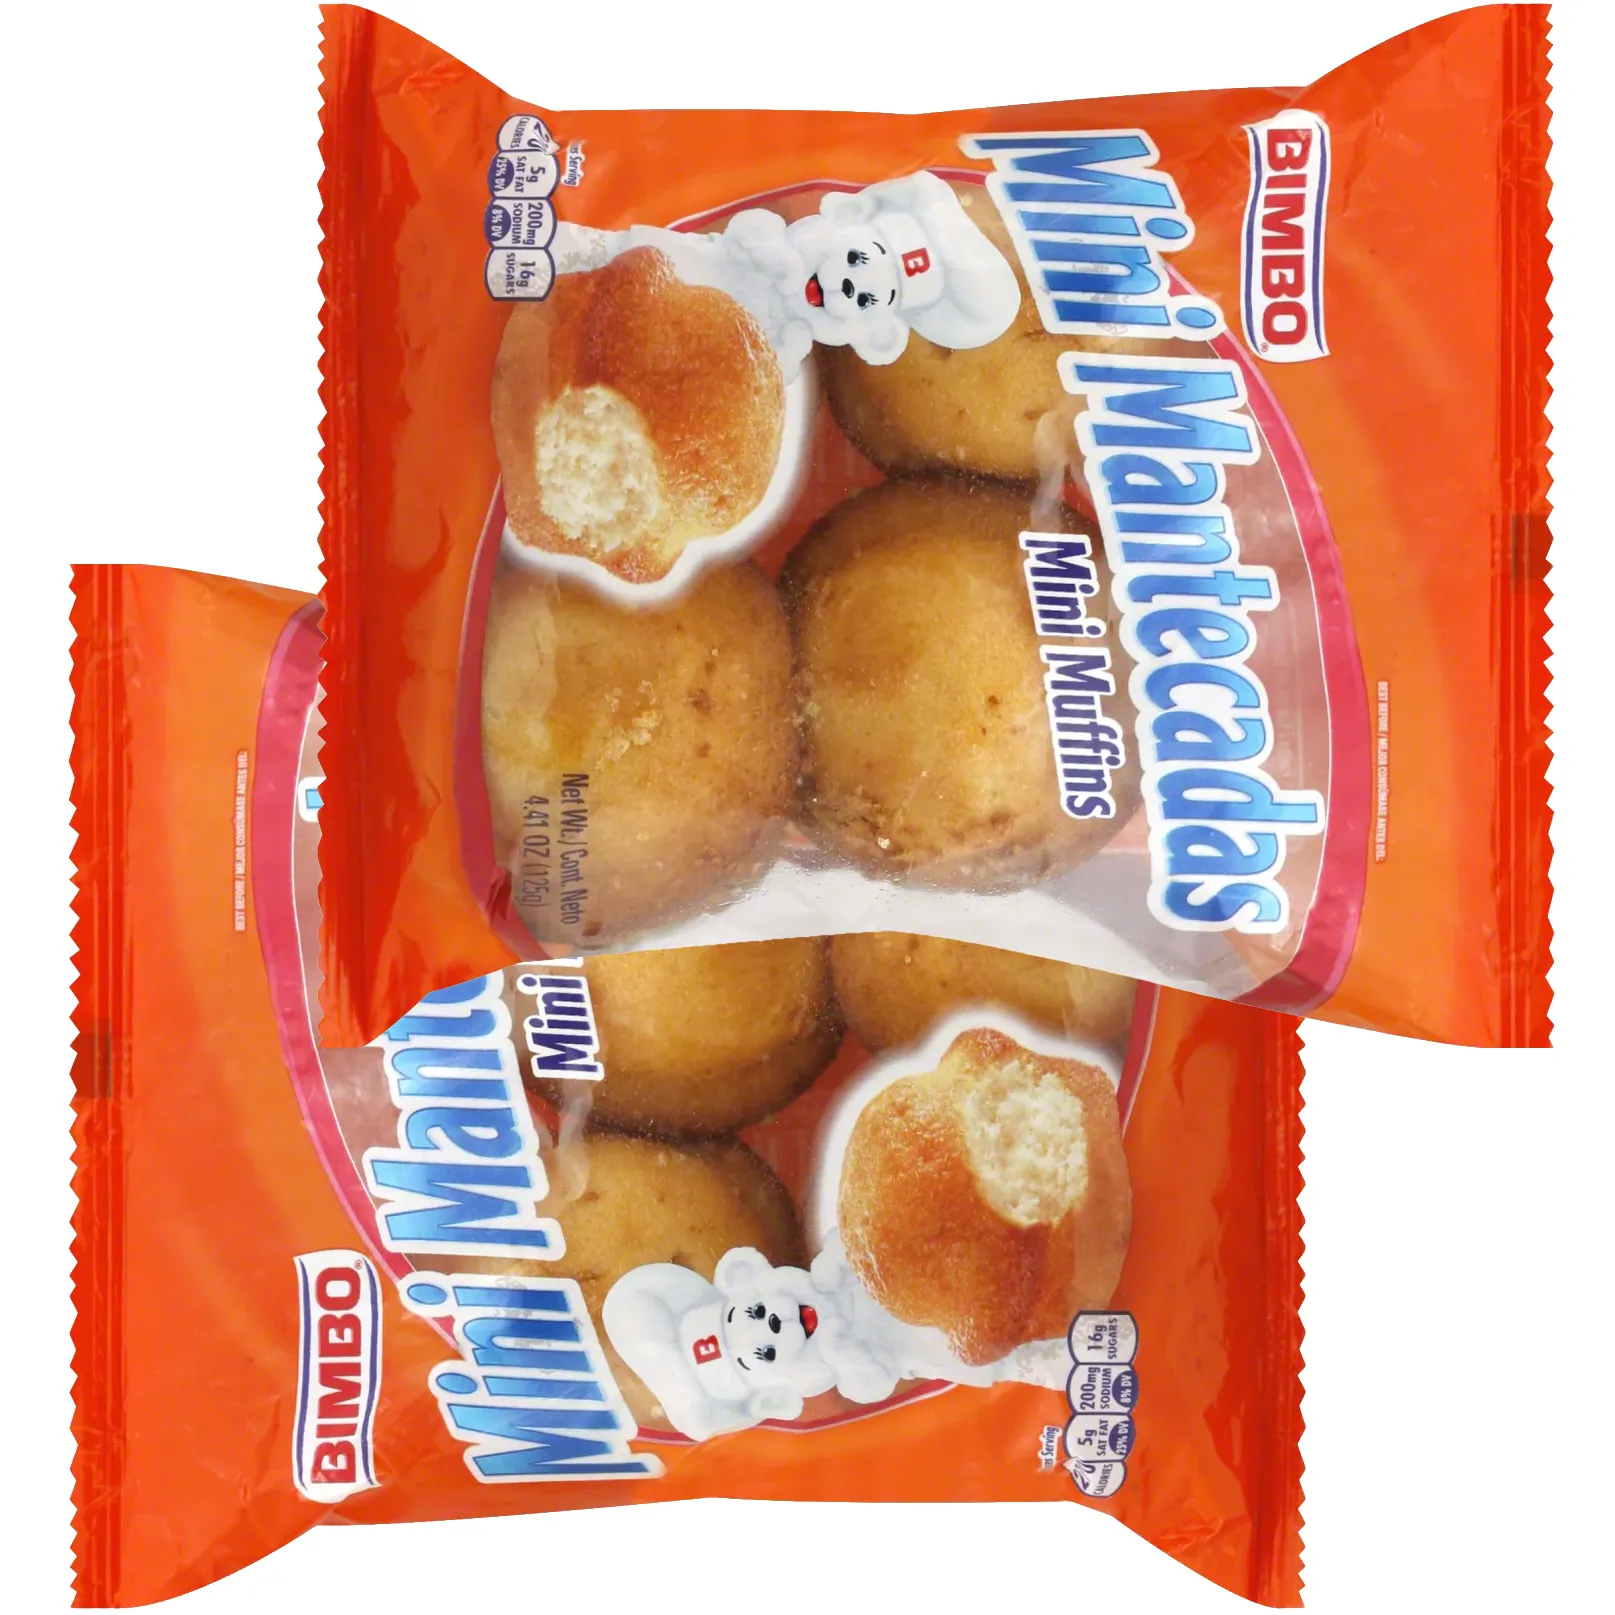 Free Mantecaditas Muffins